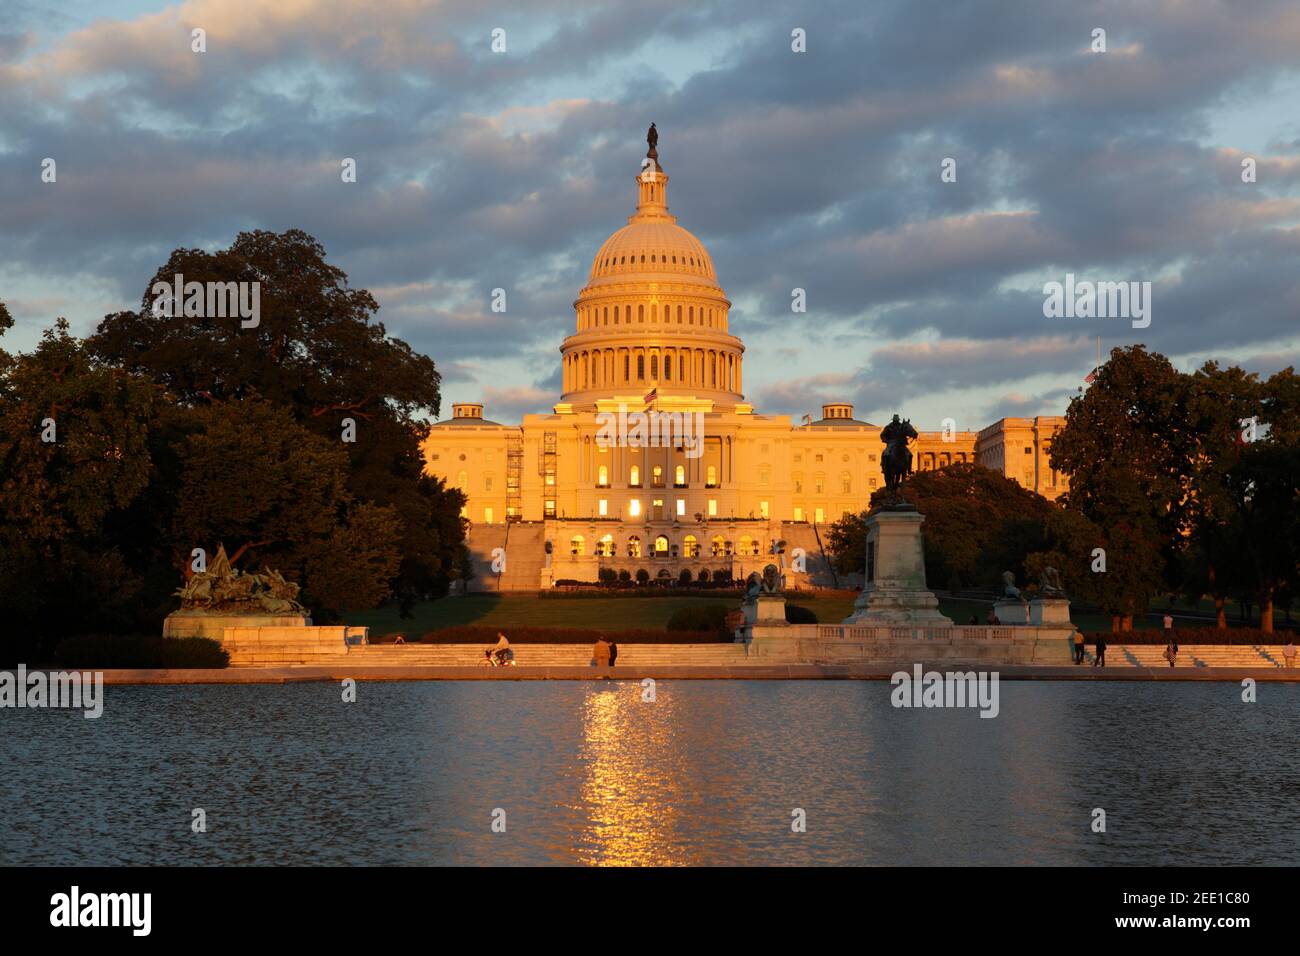 United States Capitol, Washington D.C., USA Stock Photo